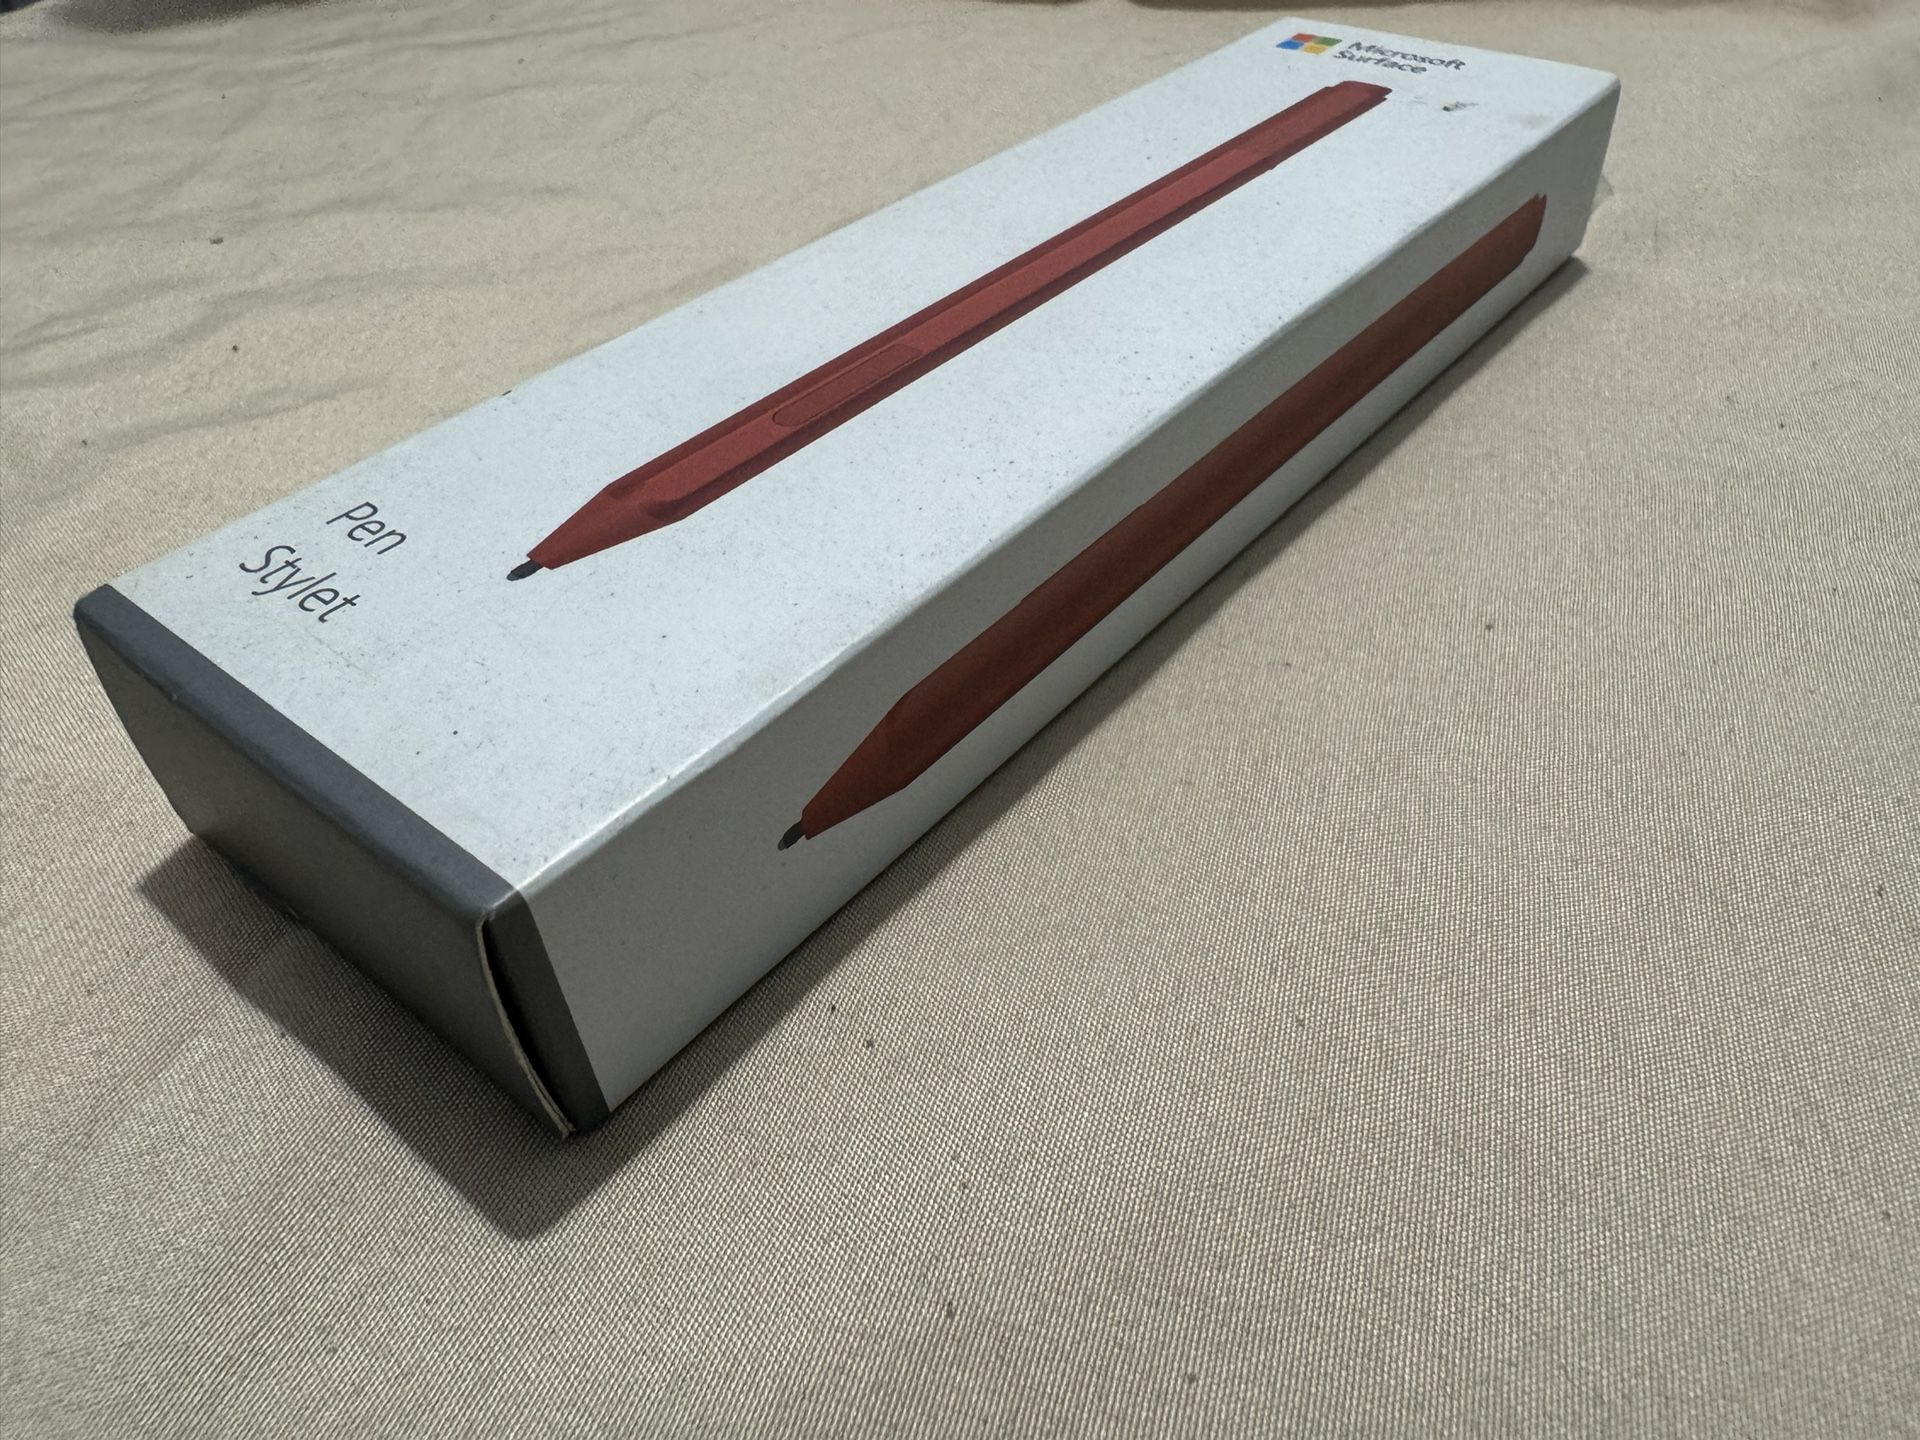 Microsoft - Surface Pen - Poppy Red Model:EYU-00041